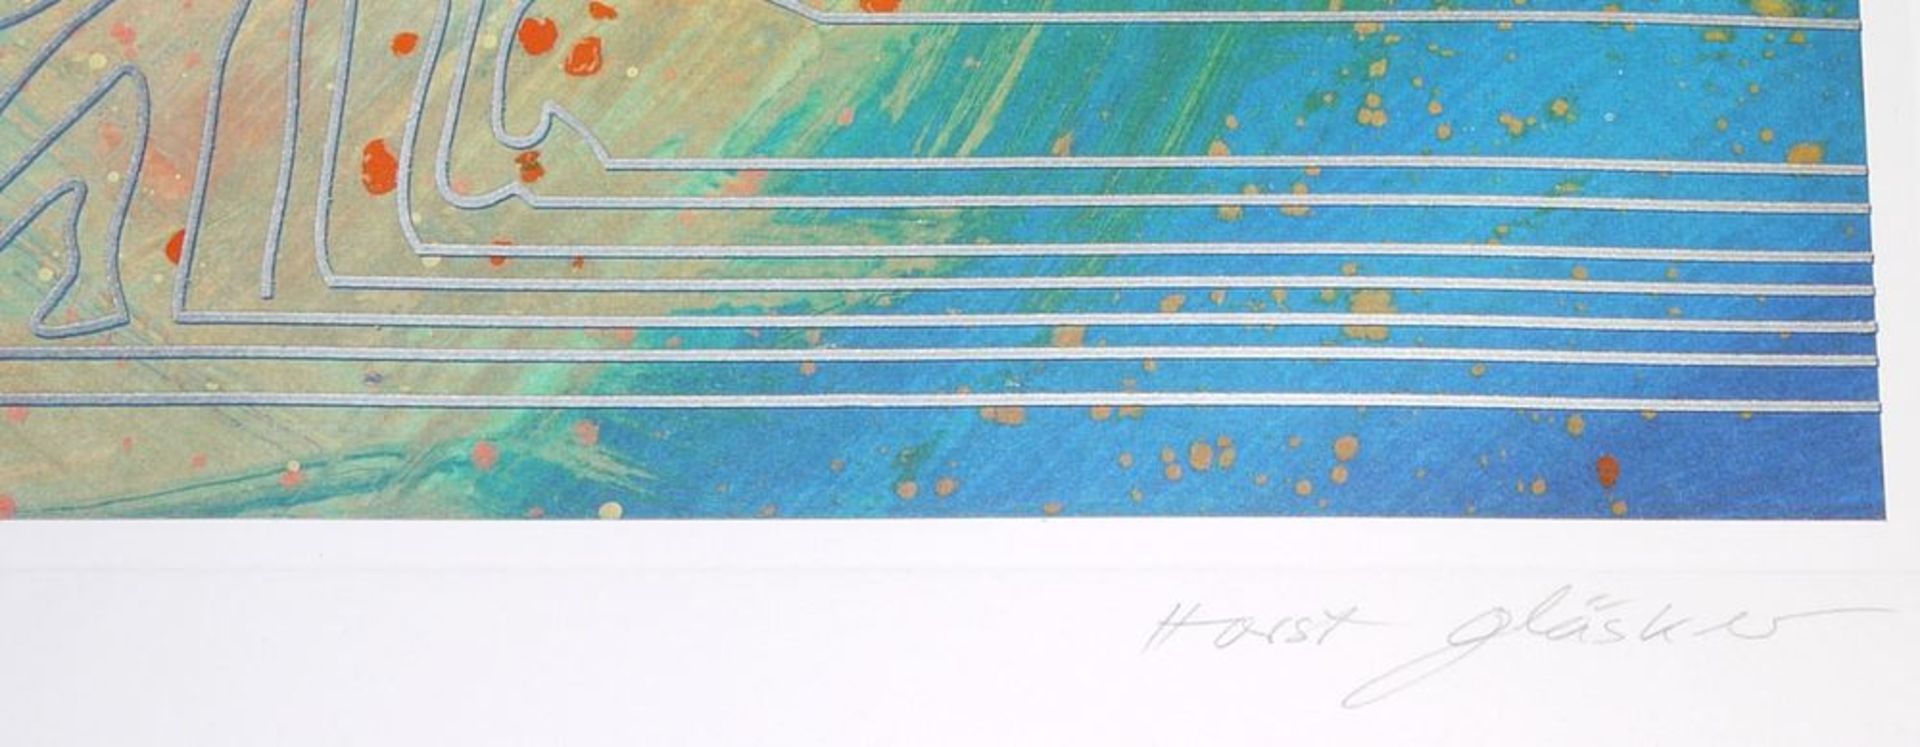 Horst Gläsker, "Mann spürt Frau auf" ("Veredelte Palette"), Collage 1983/85 & "Sonnenlinien", - Image 4 of 4